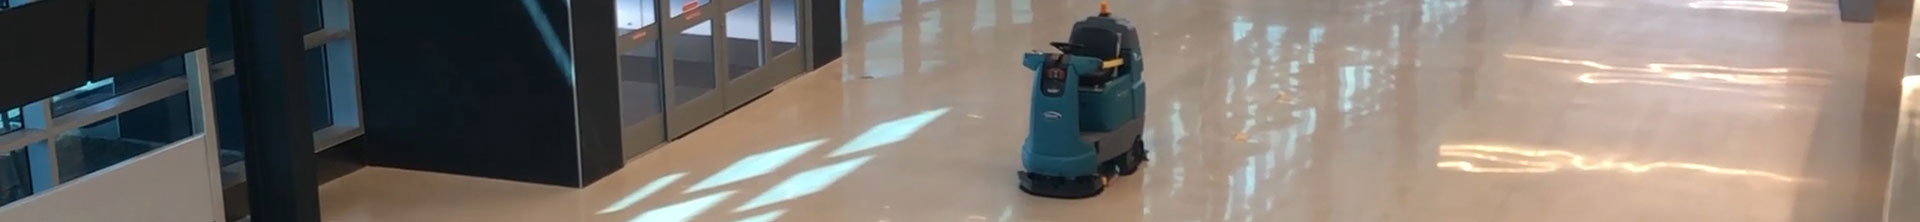 Autolaveuse robot T7AMR nettoyant un aéroport